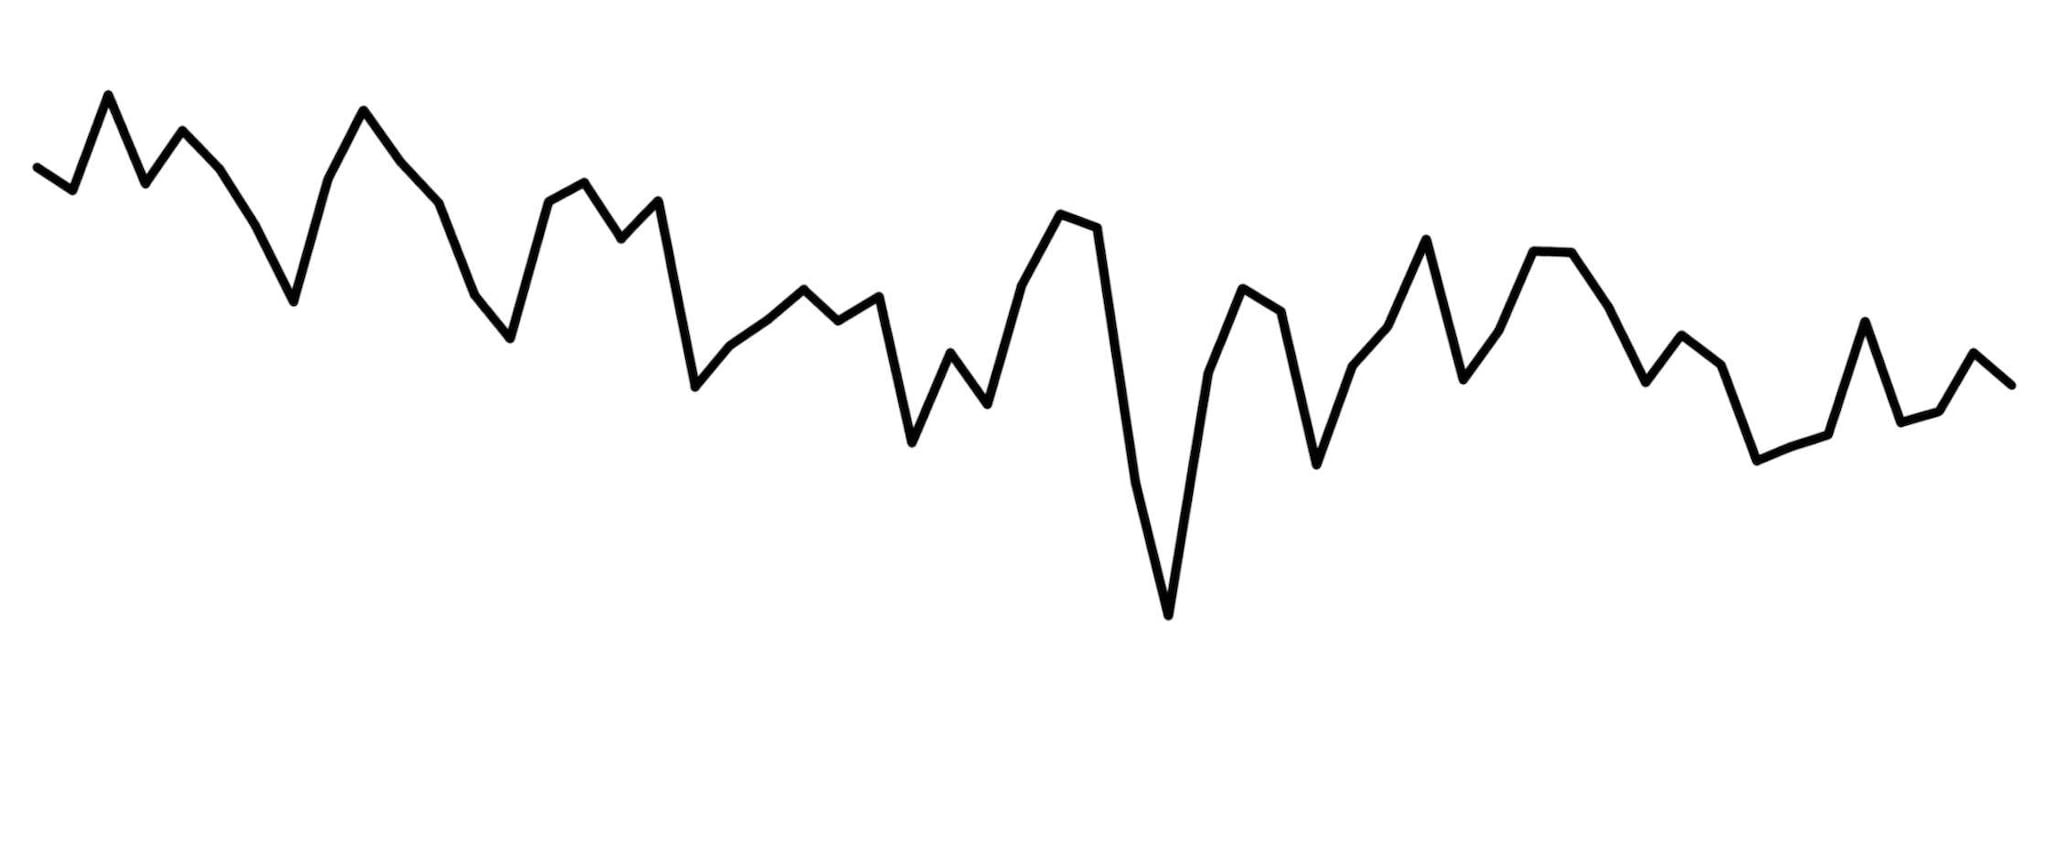 Das Schema eines Liniencharts in Form einer abwechselnd steigenden und fallenden Linie.